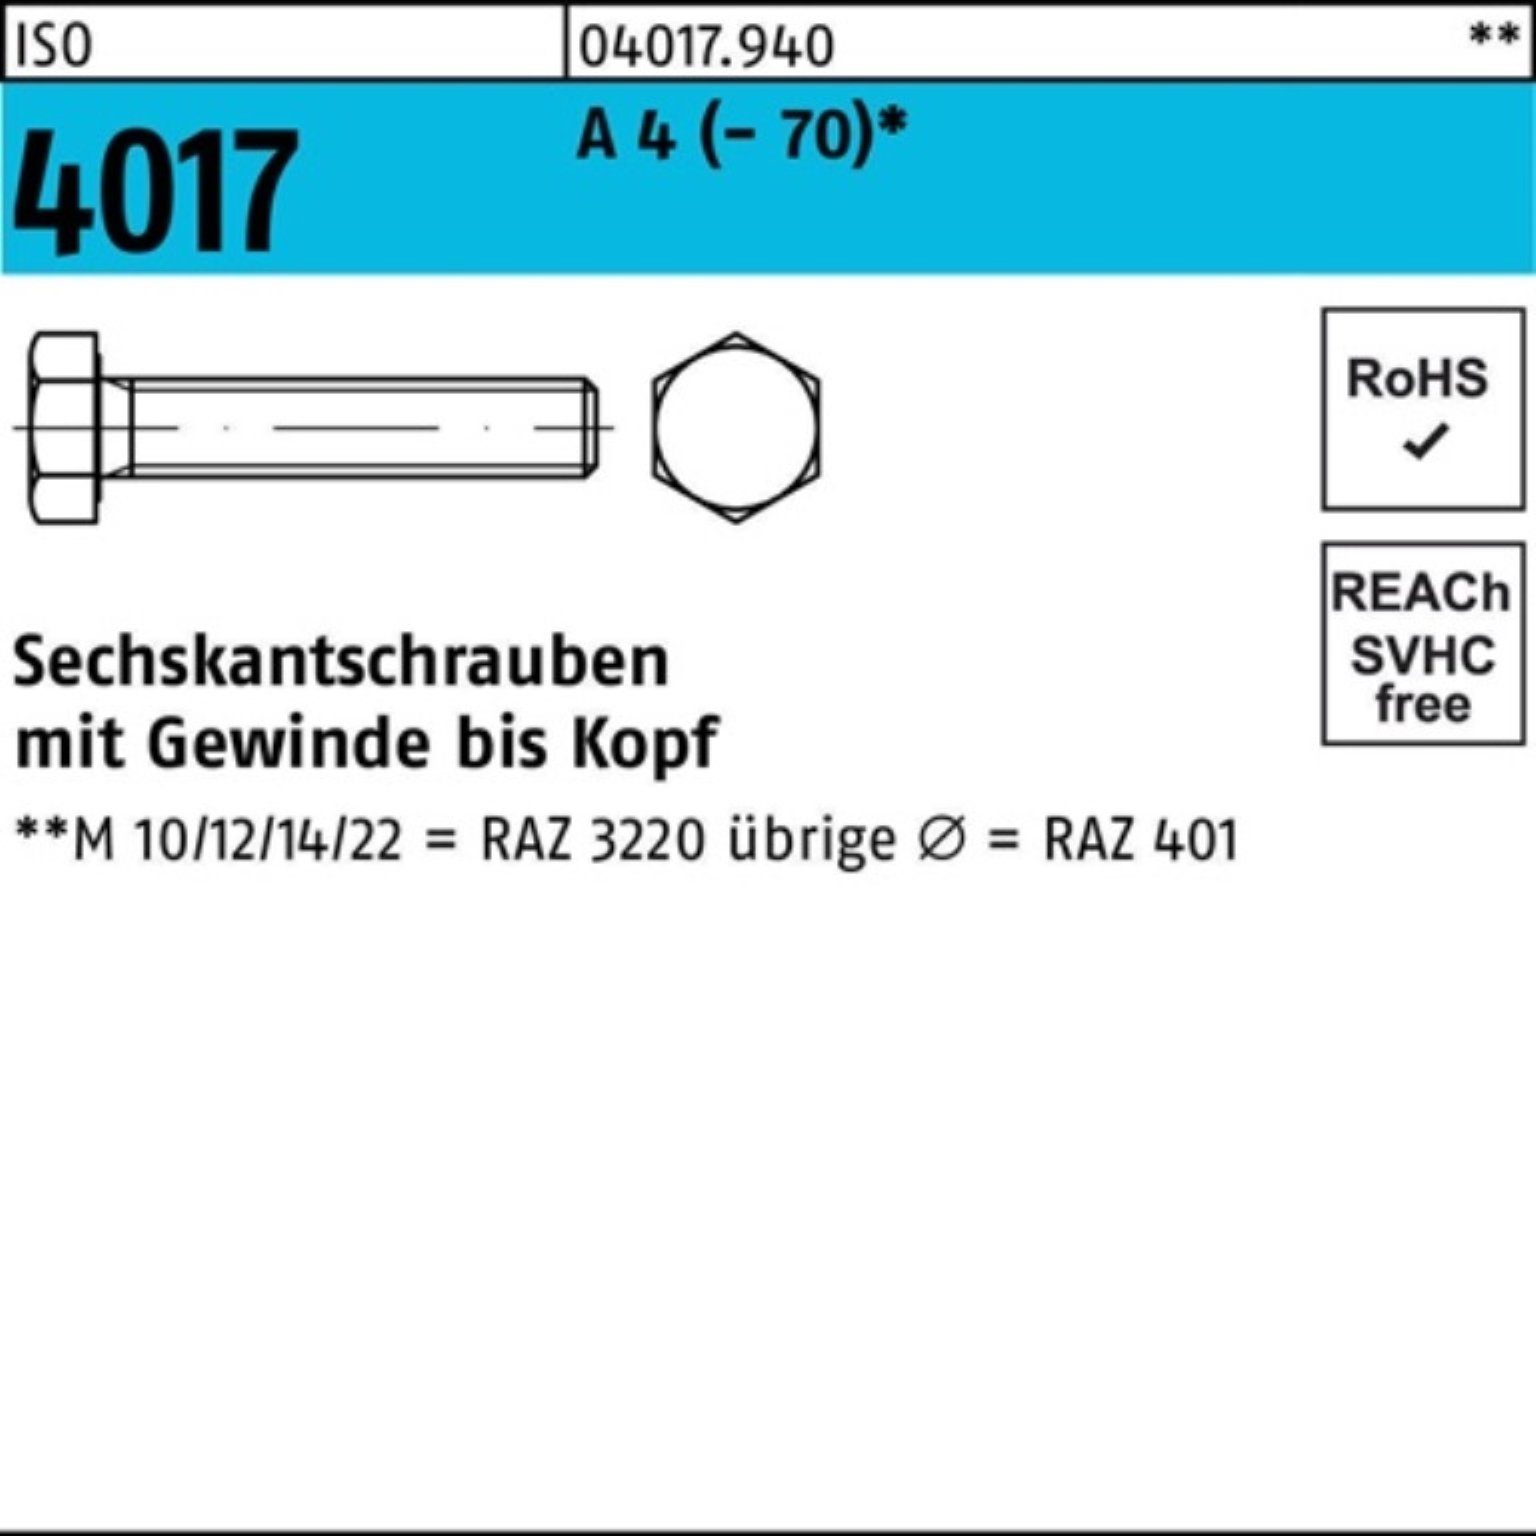 Bufab Sechskantschraube 100er Pack Sechskantschraube ISO 4017 VG M22x 100 A 4 (70) 10 Stück